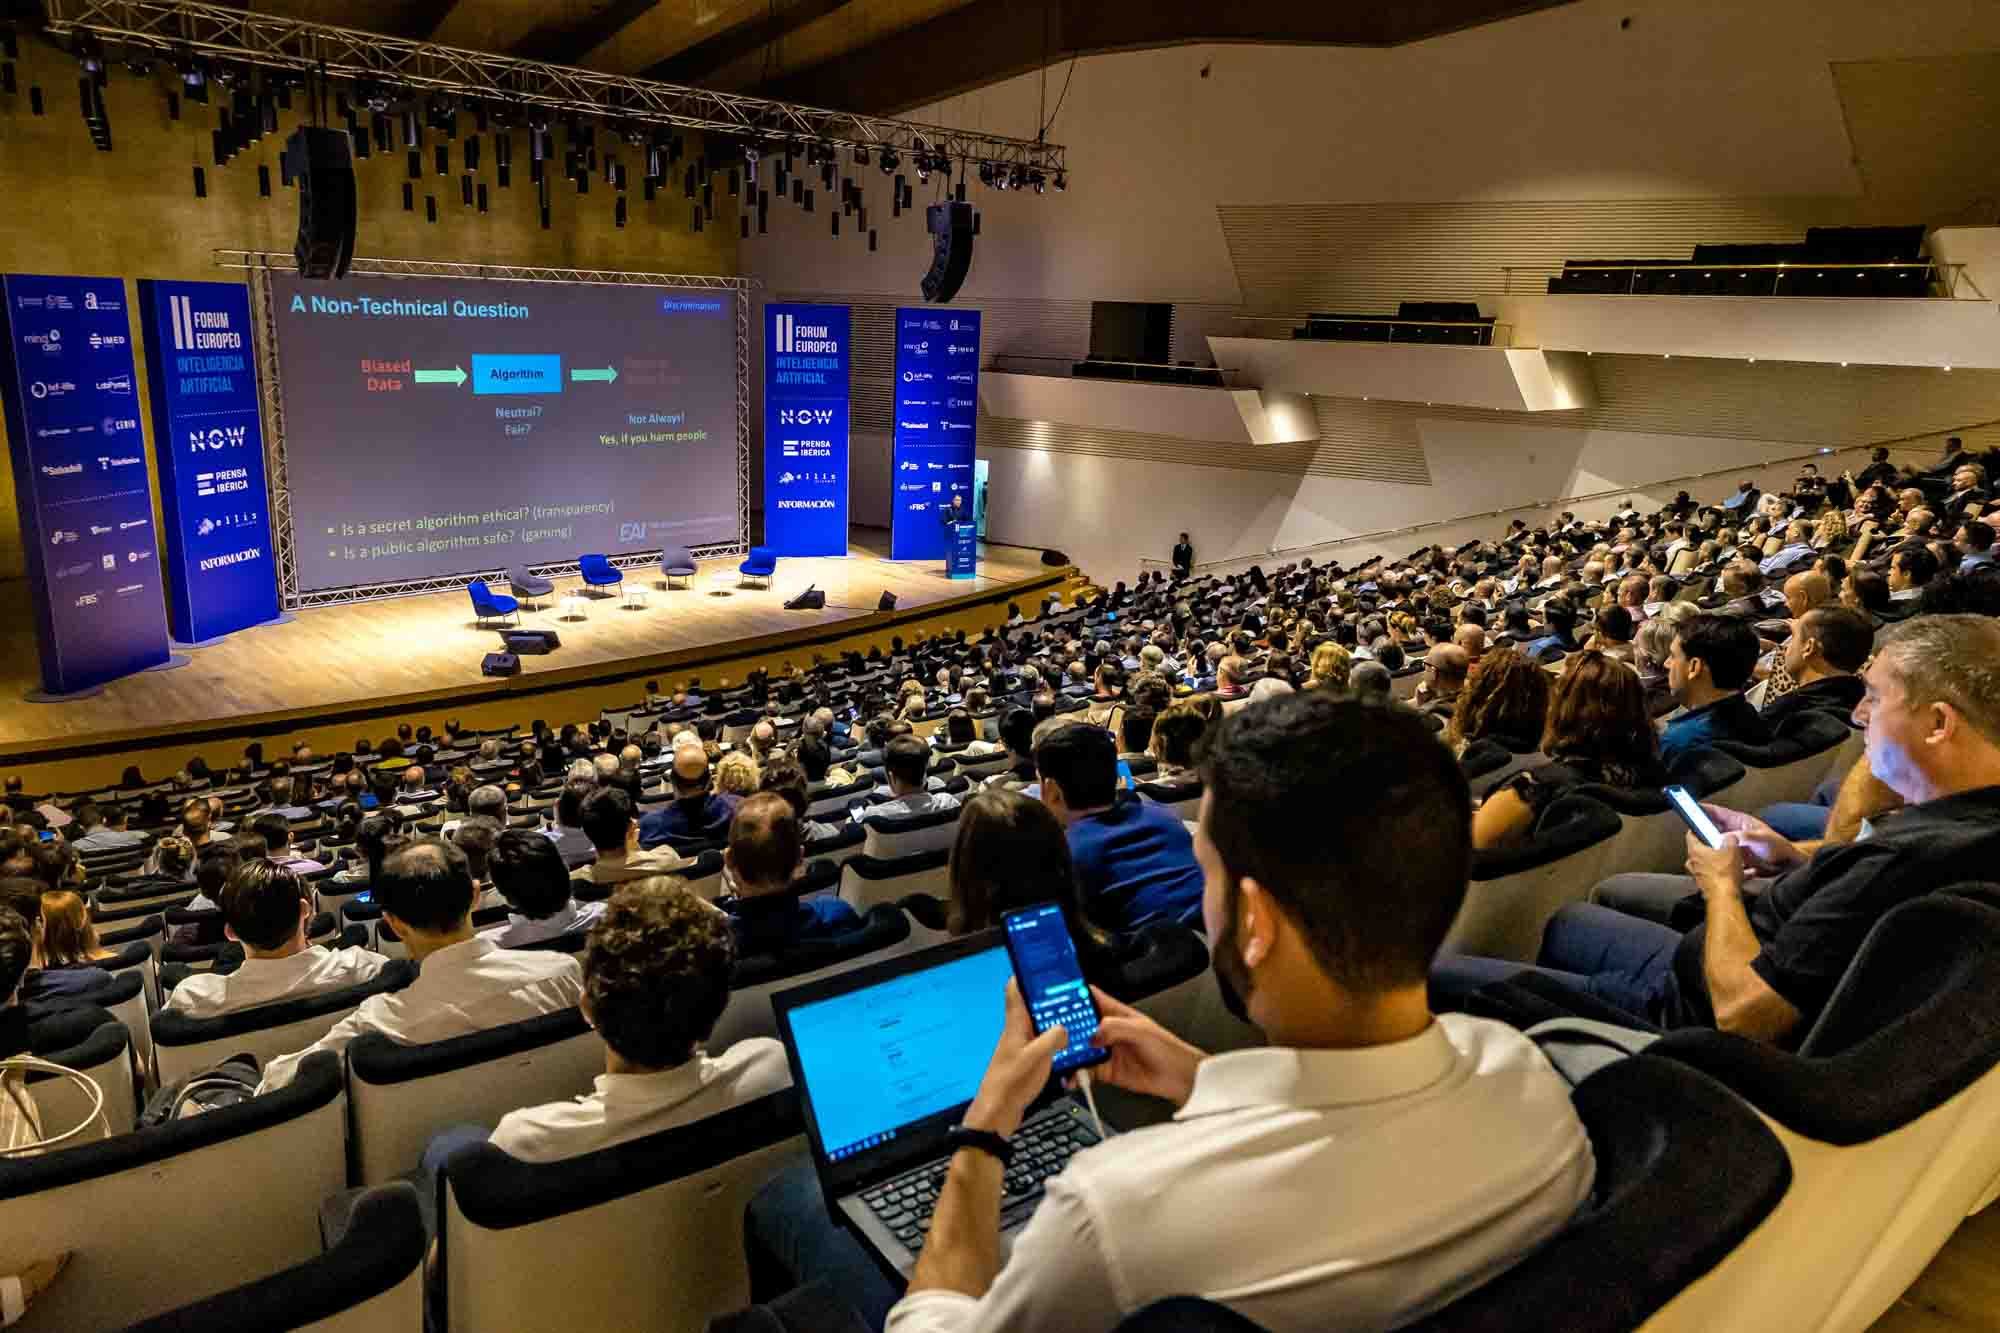 II Congreso Europeo Inteligencia Artificial - Alicante 2023